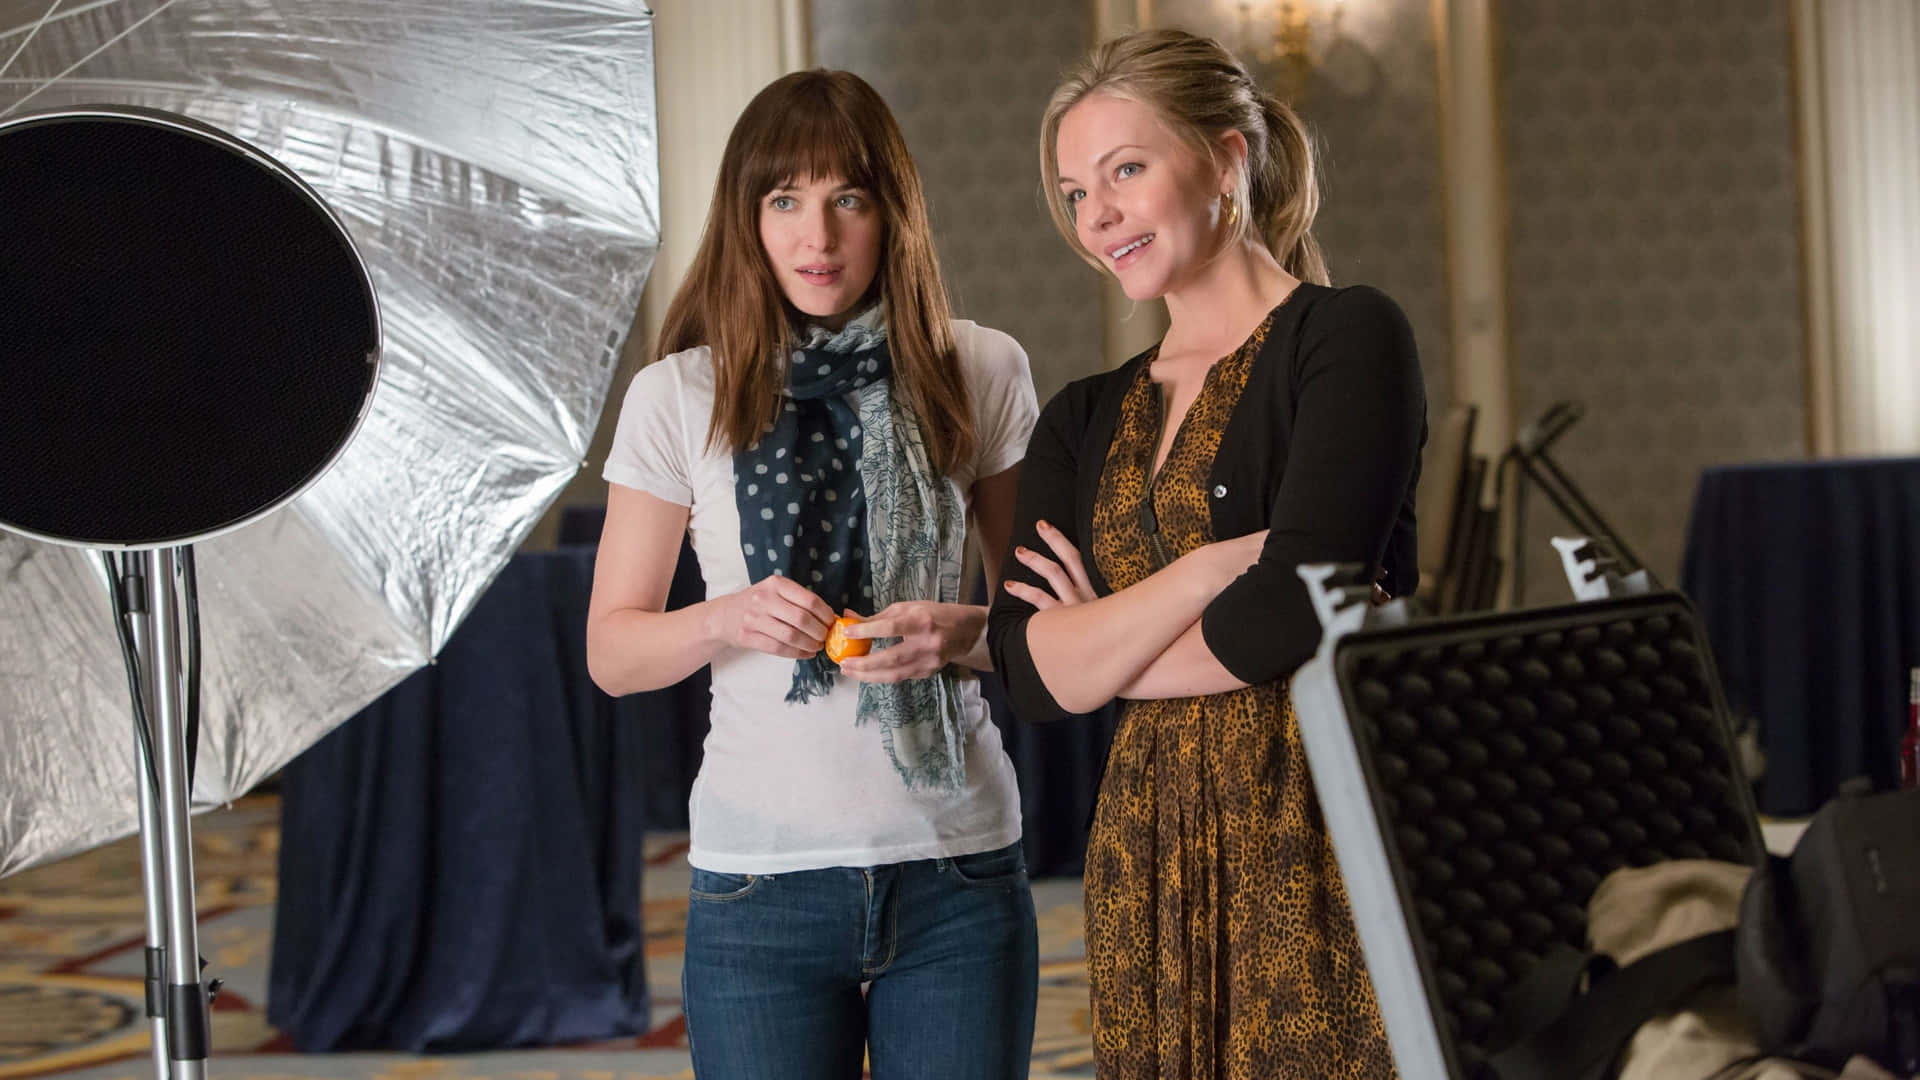 Dakotajohnson Spielt Anastasia Steele Und Jamie Dornan Spielt Christian Grey Im Gleichnamigen Film Fifty Shades Of Grey. Wallpaper